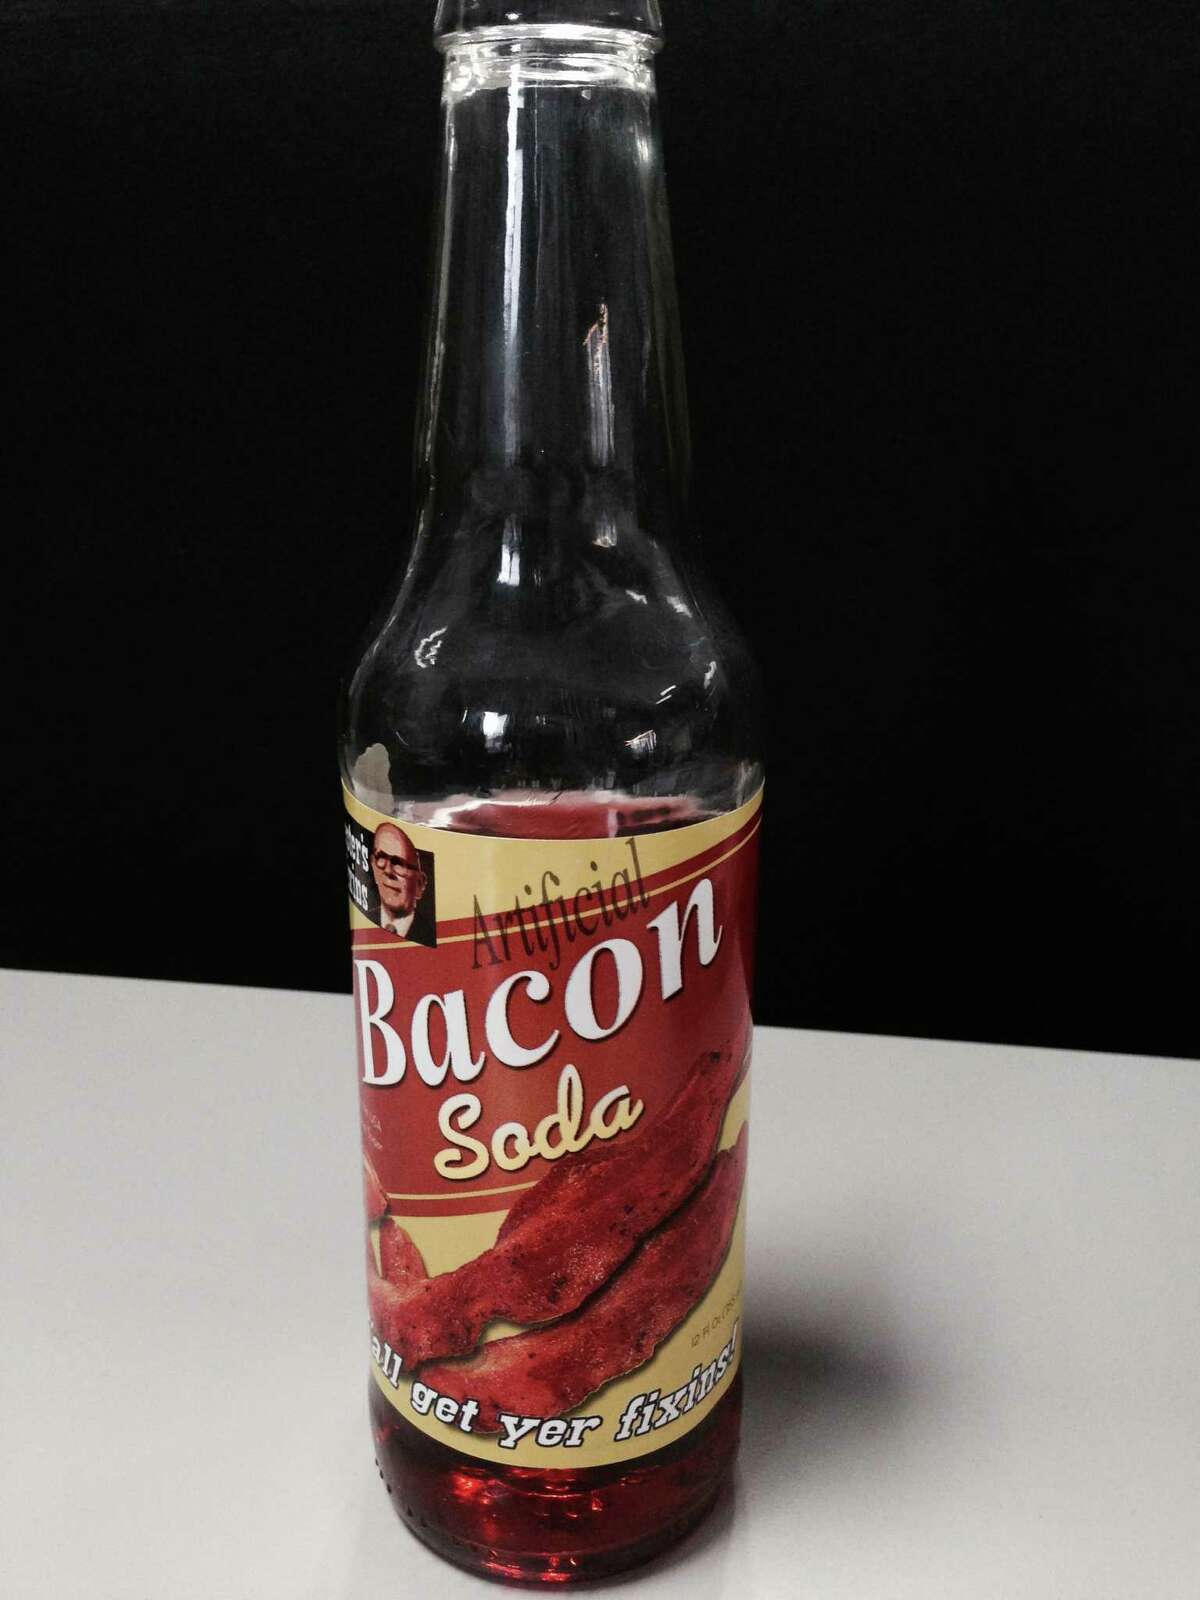 Bacon soda